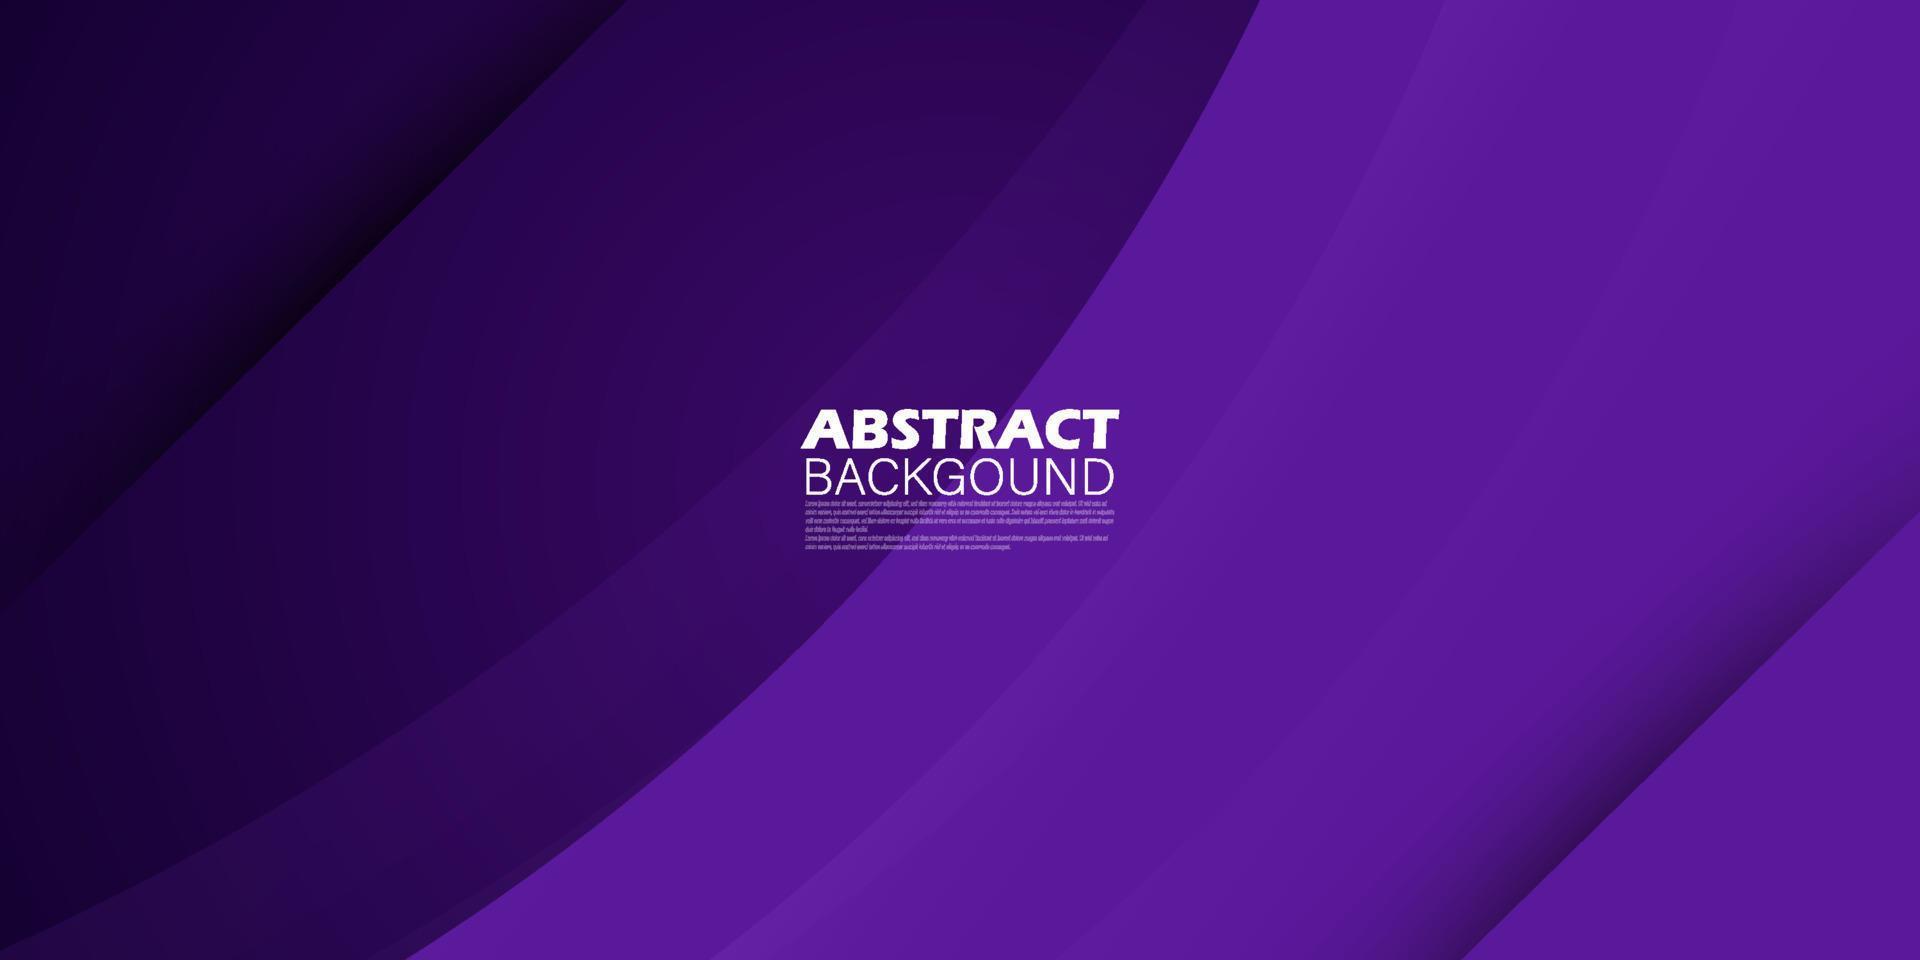 moderno abstracto violeta lavanda púrpura con líneas de fondo degradado. patrón simple para mostrar el cartel de papel tapiz de la plantilla del sitio web del anuncio del producto. eps10 vector